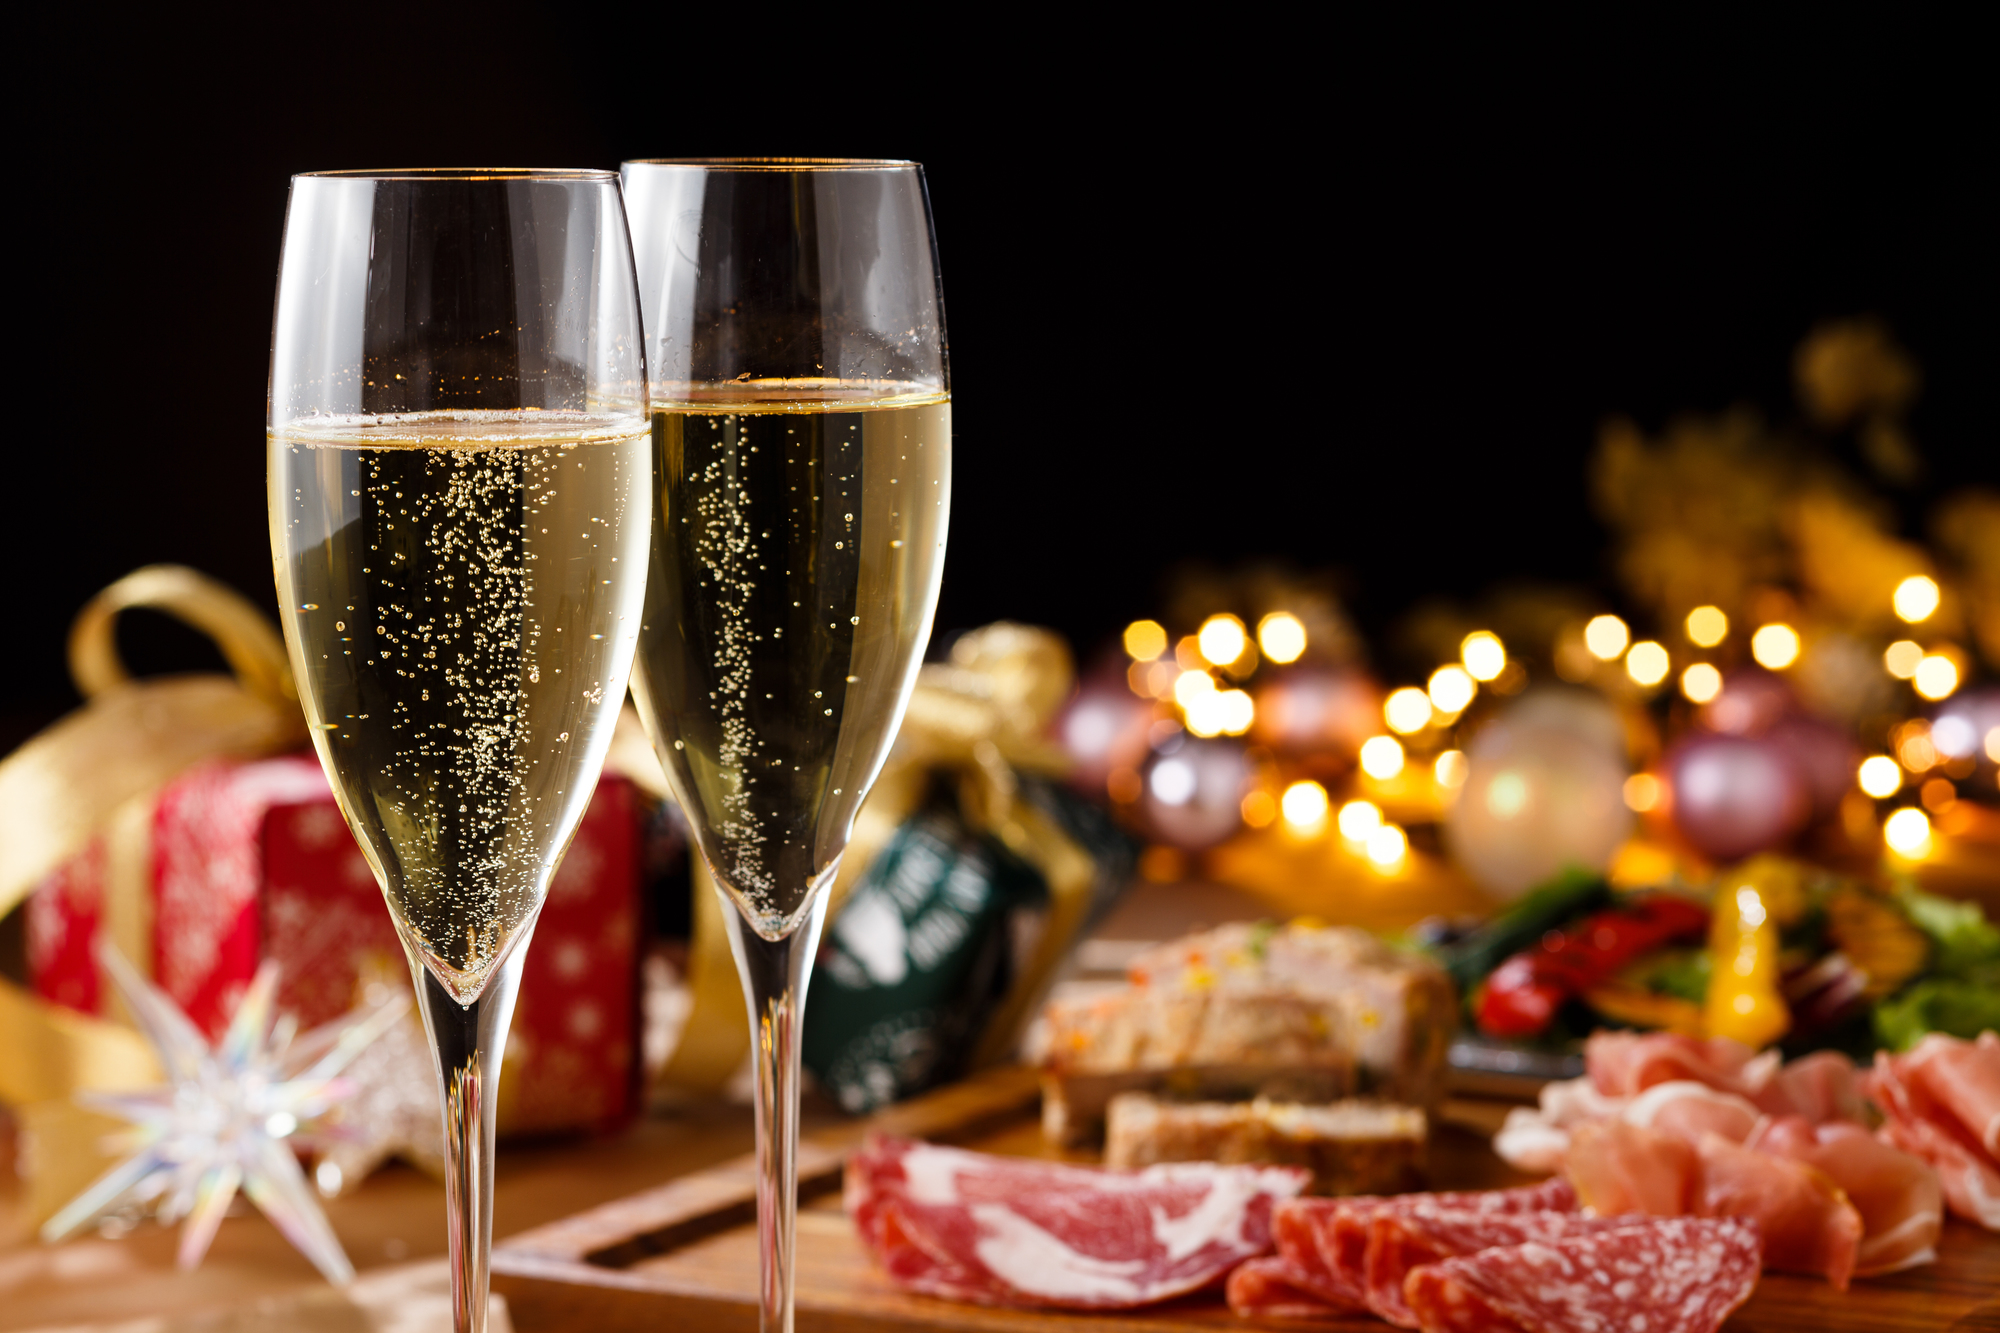 クリスマスの装飾のされたテーブルに並ぶシャンパンと料理